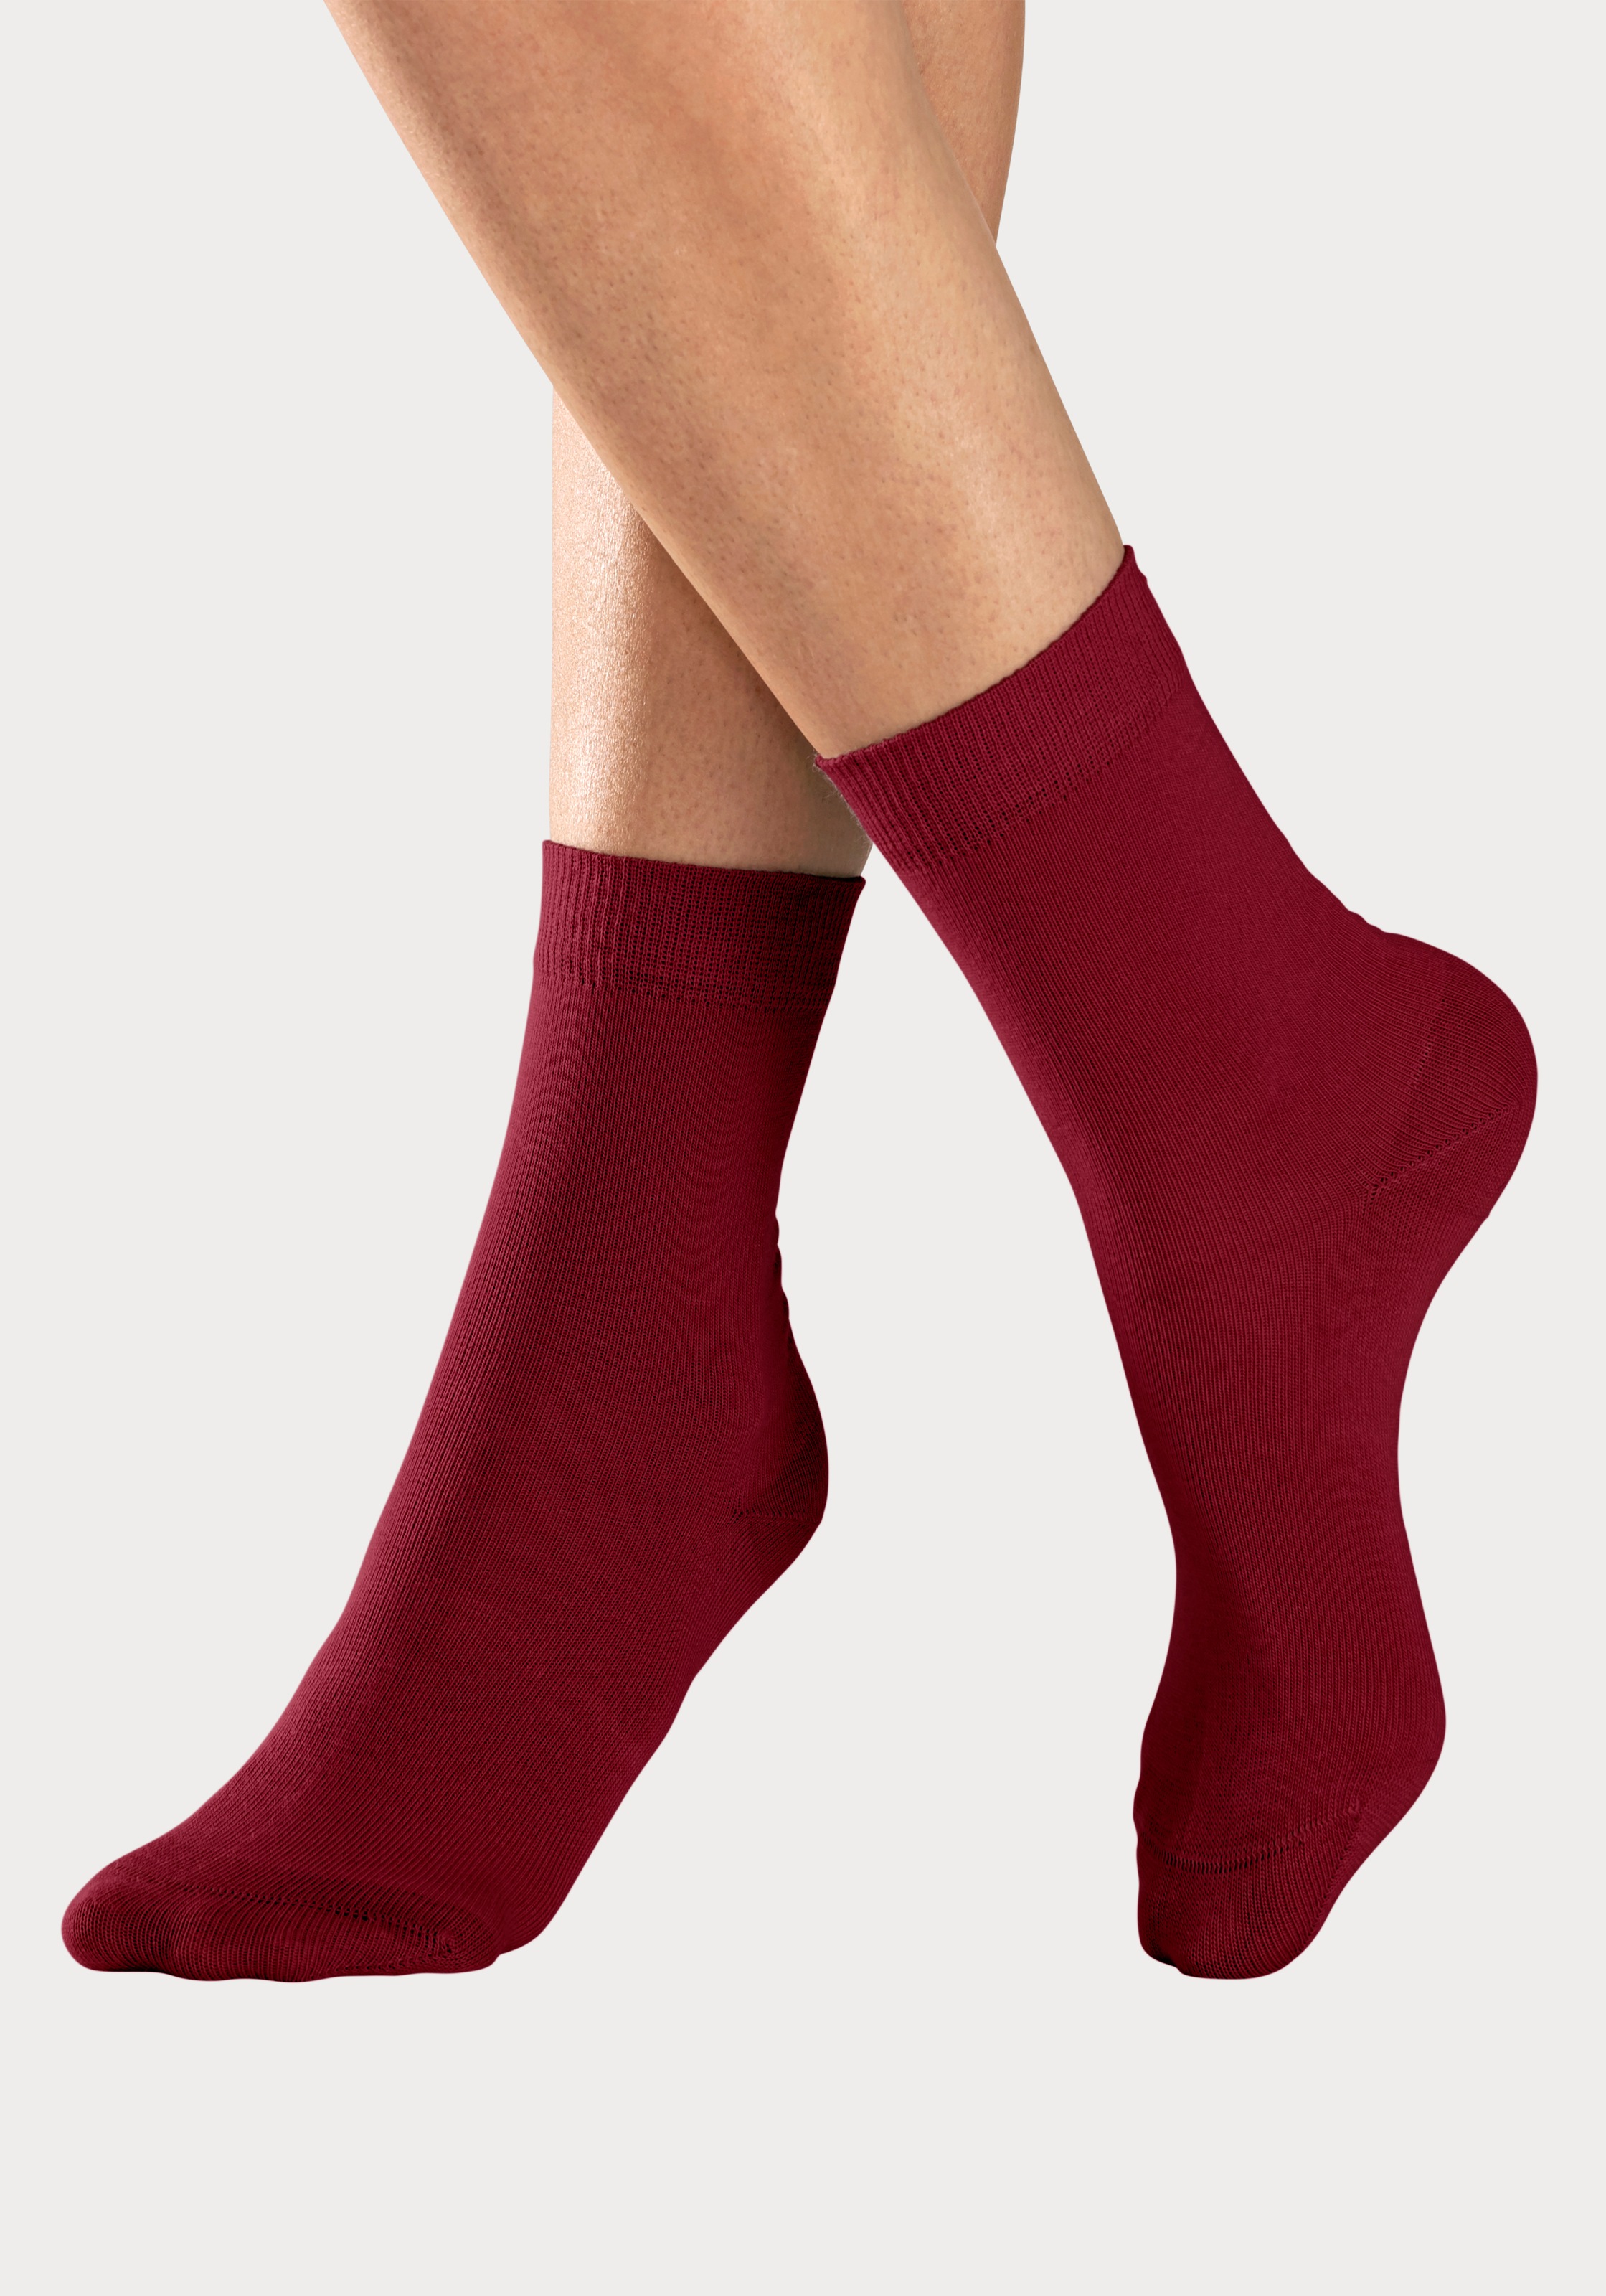 H.I.S Socken, im OTTO Online Farbzusammenstellungen Shop bestellen 4 in unterschiedlichen Paar), (Set